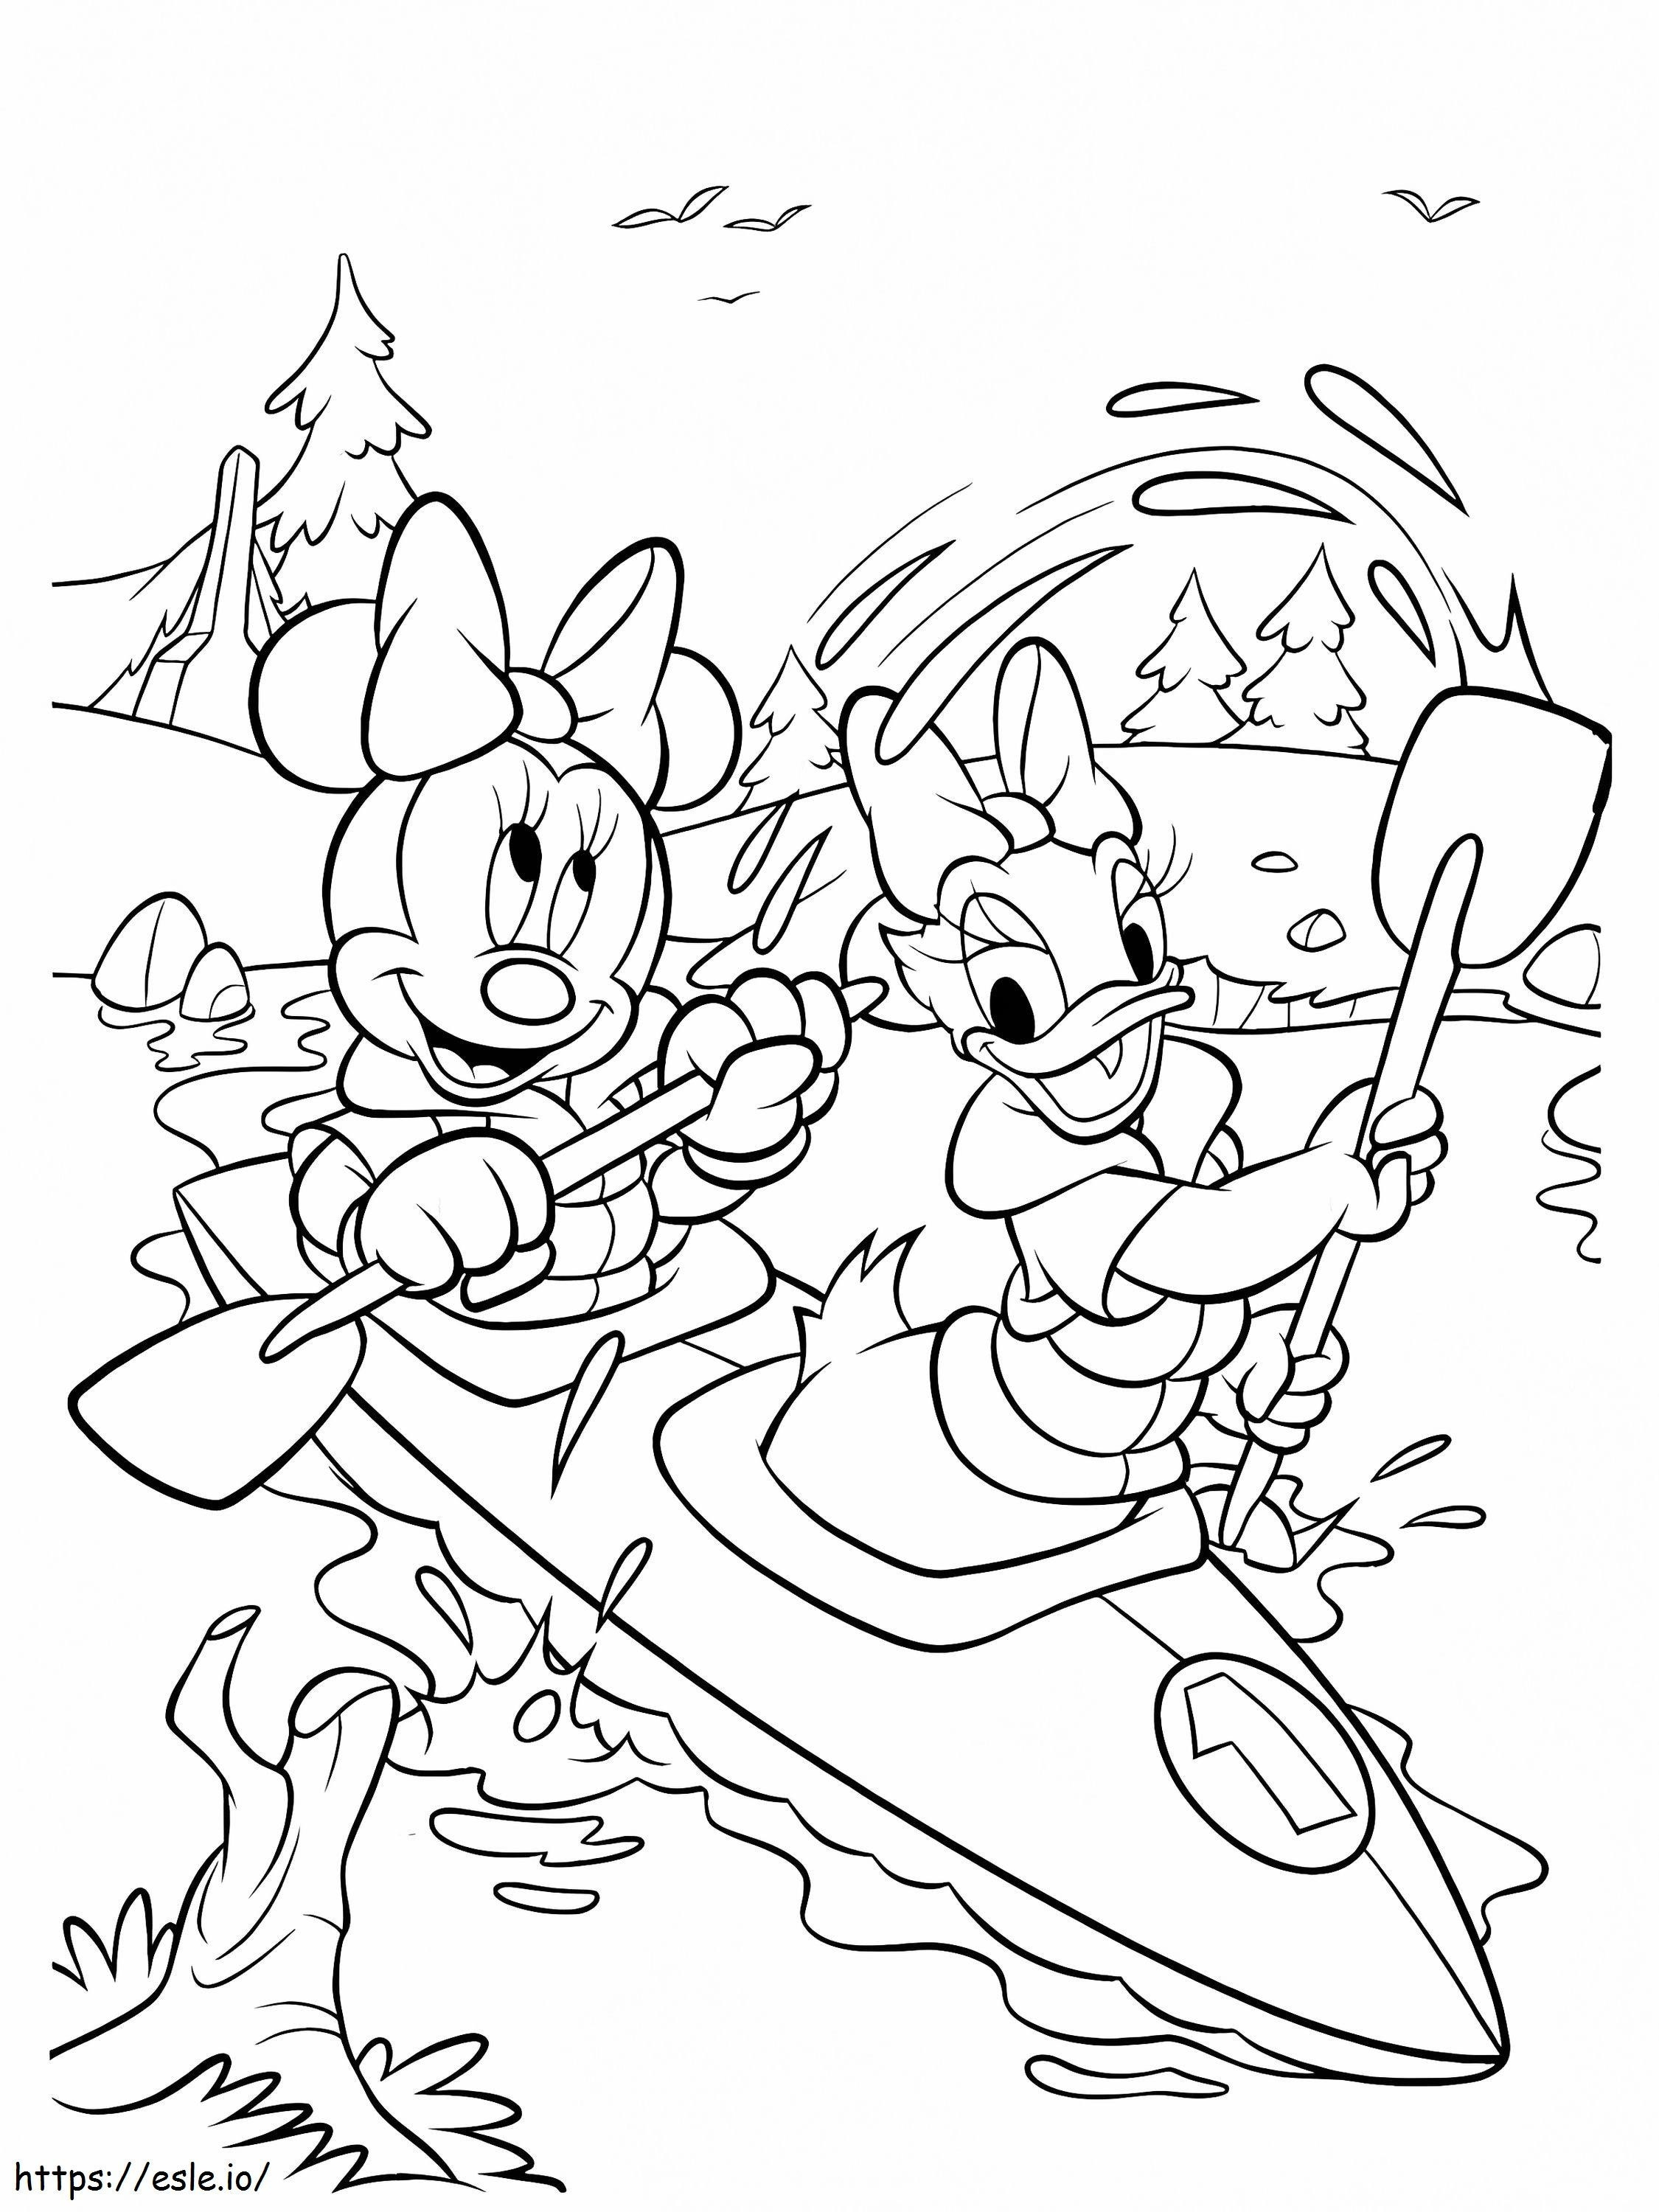 Minni Hiiri ja Daisy Duck soutavat venettä värityskuva